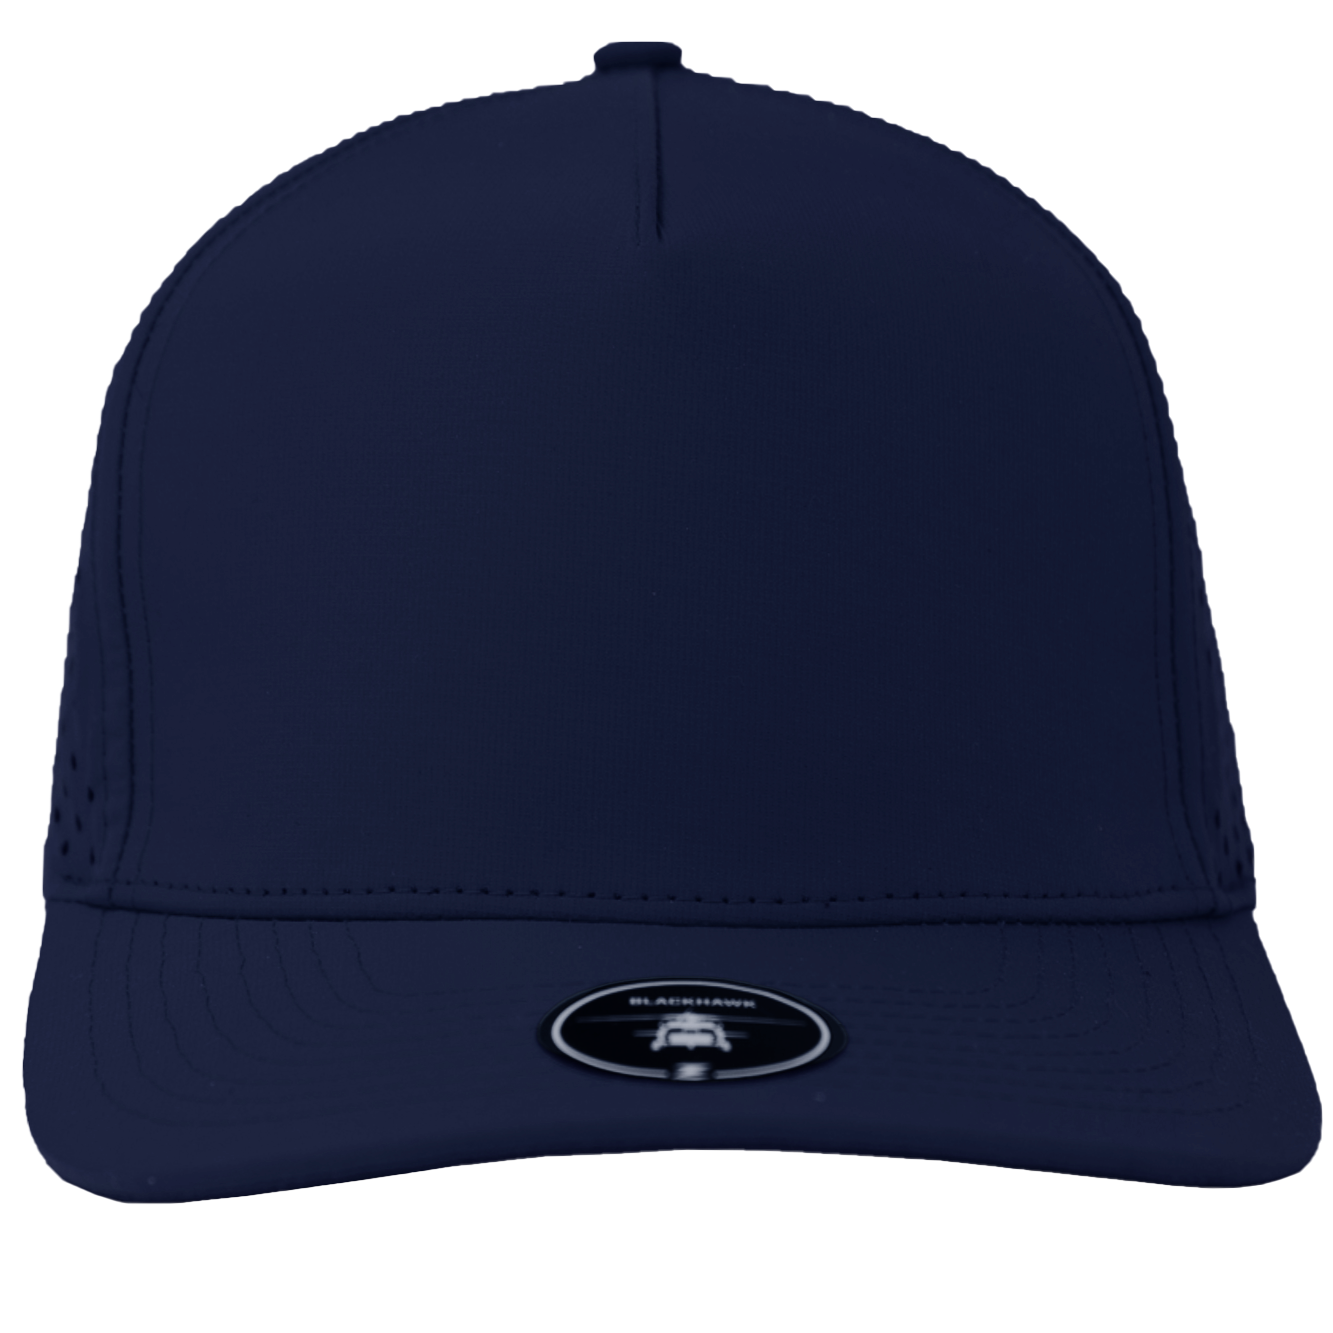 BLACKHAWK-Water Repellent hat-Zapped Headwear-navy-Zapped Headwea